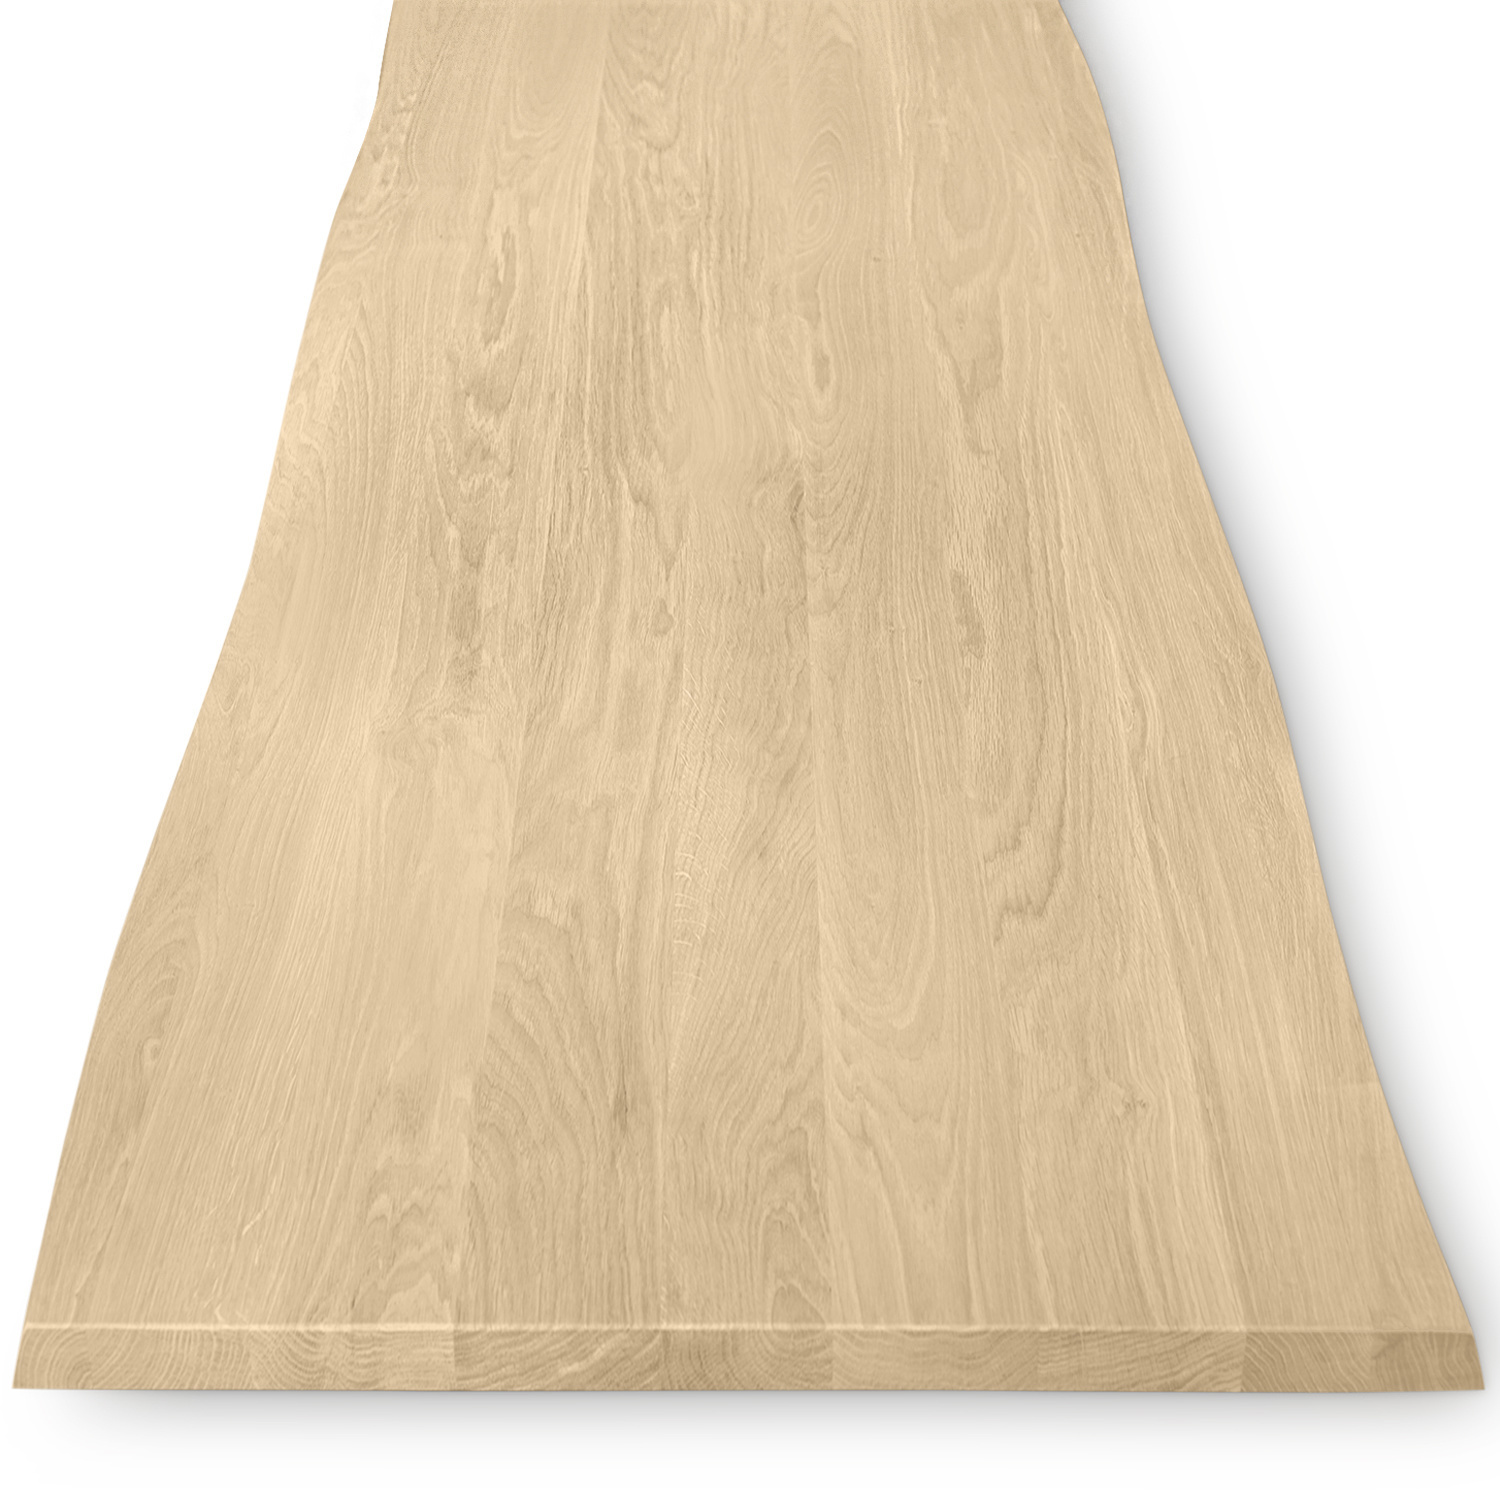  Tischplatte Eiche - mit Baumkante (Optik)  - 2,7 cm dick (1-Schicht) - Breite Lamellen (10 - 12 cm breit) - Eichenholz A-Qualität mit natürlichen Baumkant - verleimt & künstlich getrocknet (HF 8-12%) - verschiedene Größen